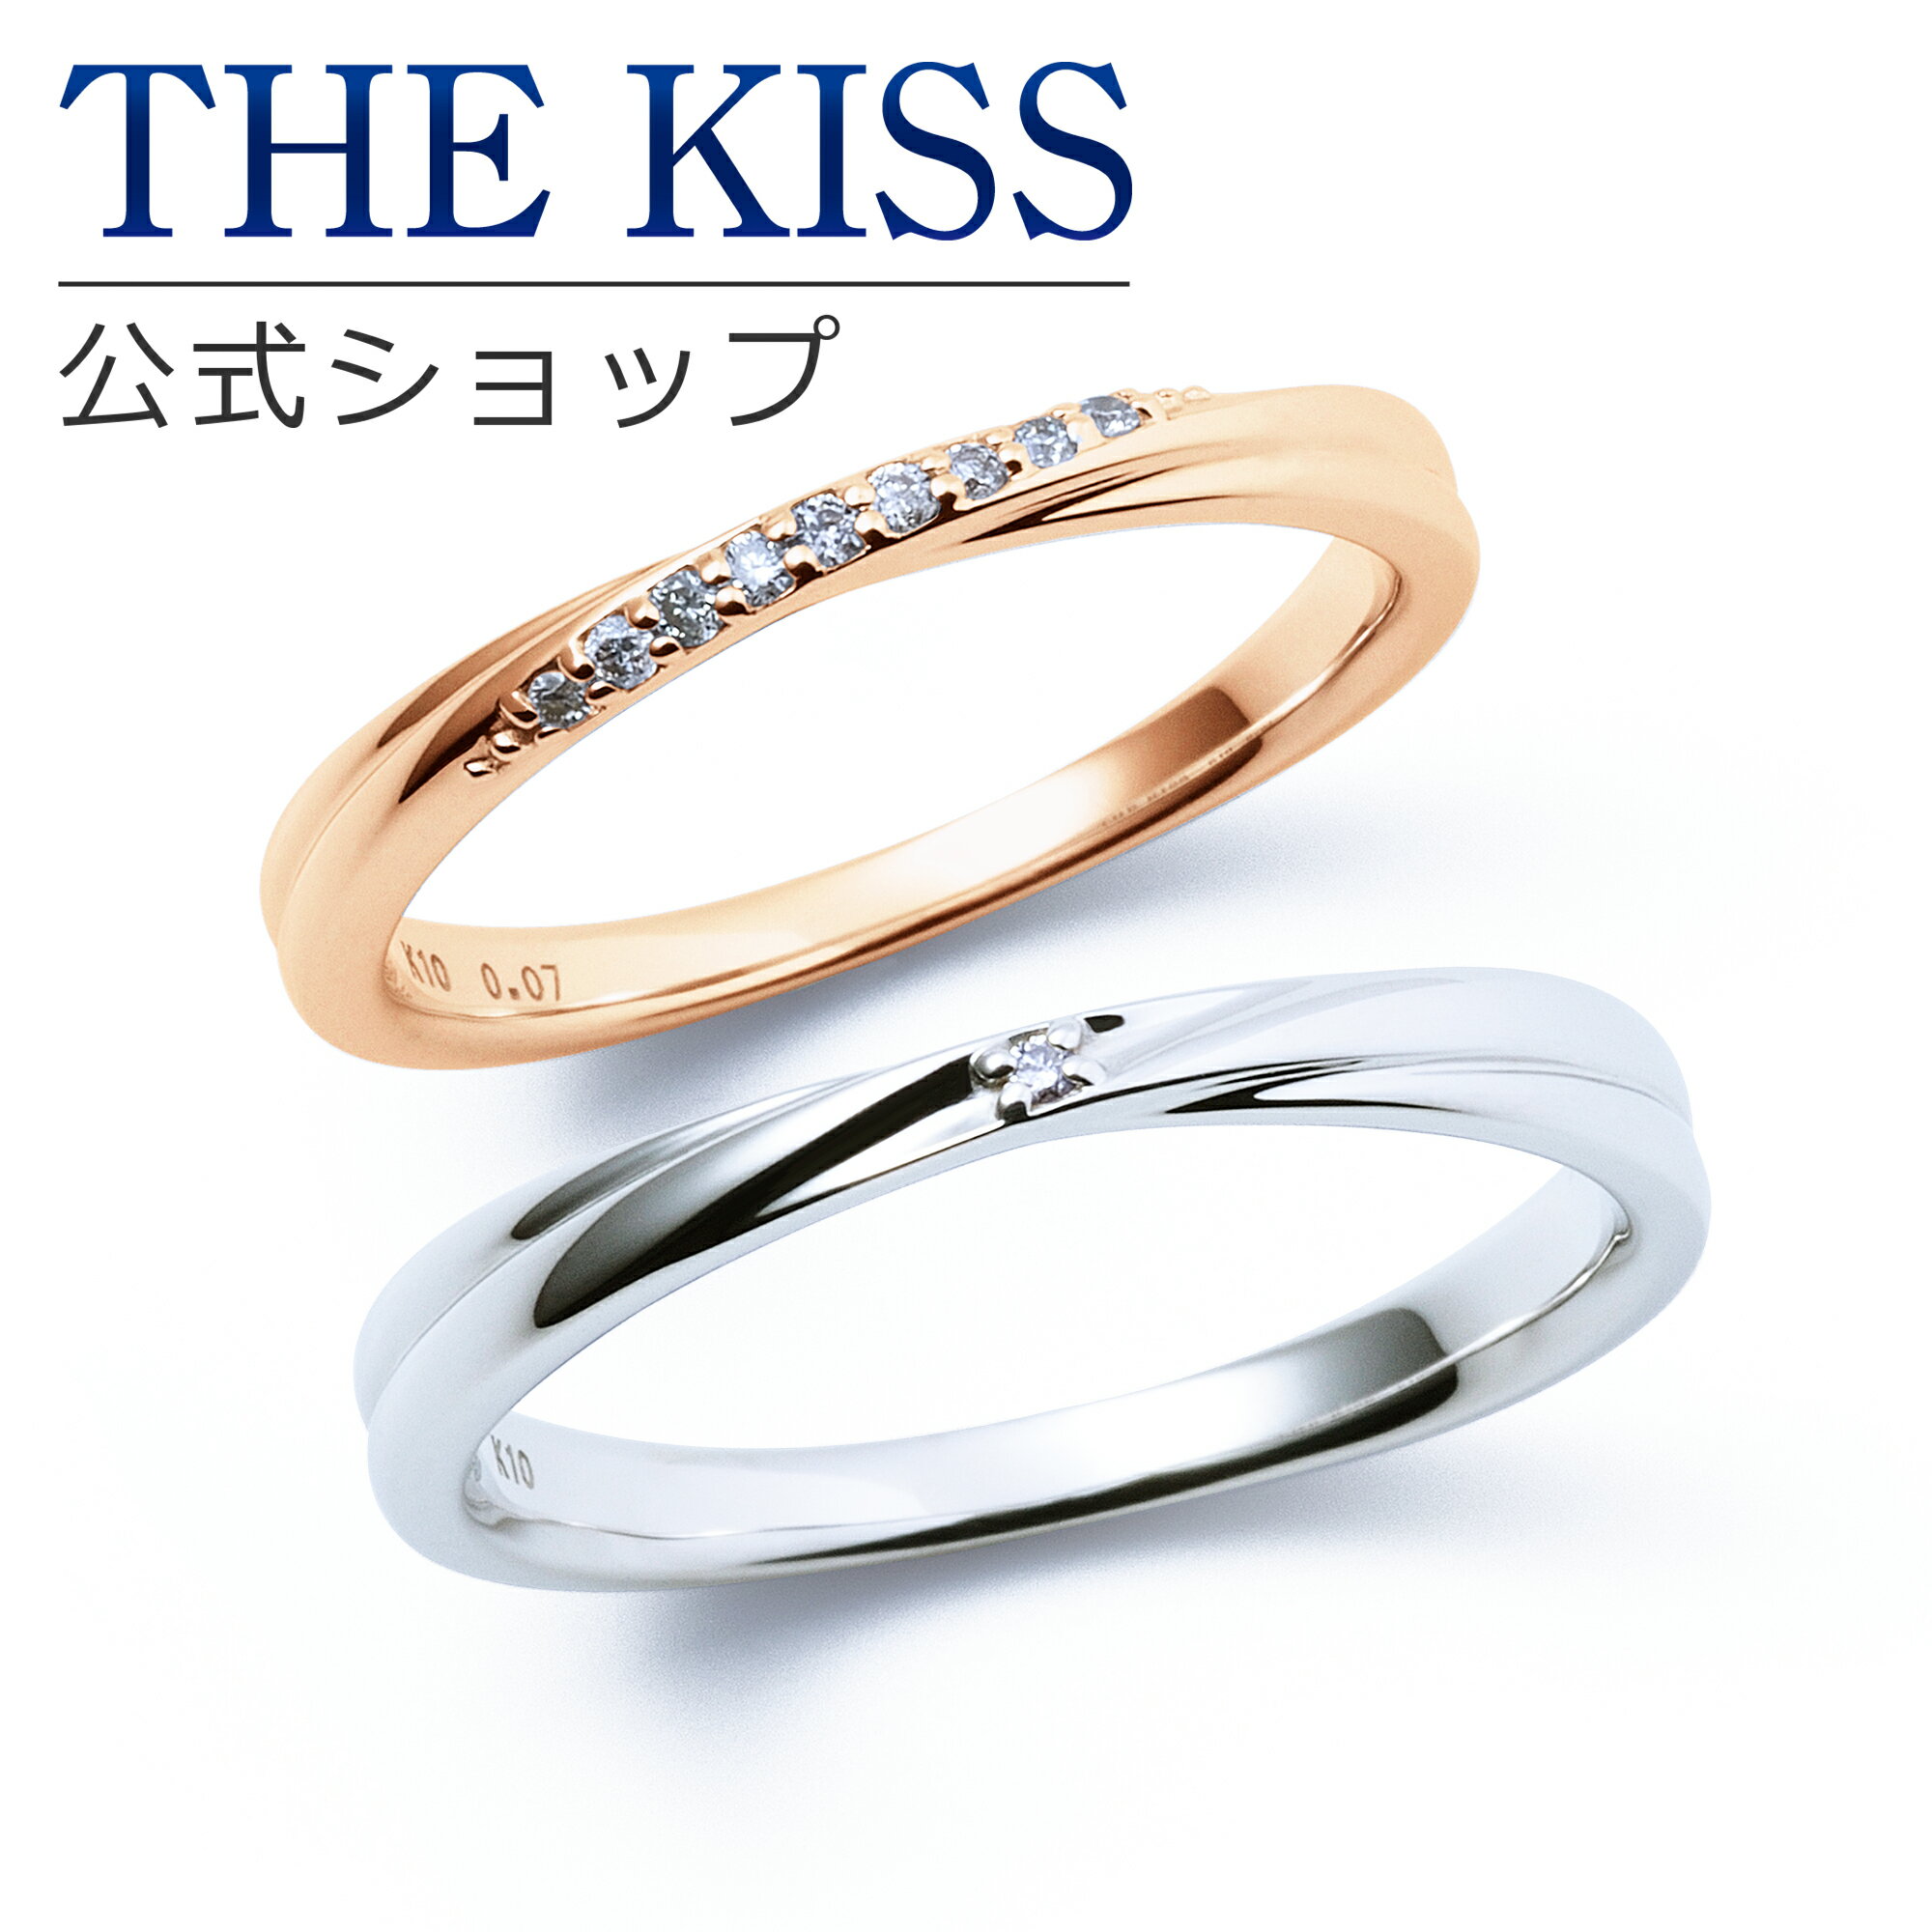 【ラッピング無料】【刻印無料】【THE KISS Anniversary】 K10 ピンクゴールド ホワイトゴールド マリッジ リング 結婚指輪 ペアリング pg wg THE KISS ザキッス リング・指輪 7081122021-7621122022 セット シンプル 細身 男性 女性 2個セット ブライダル